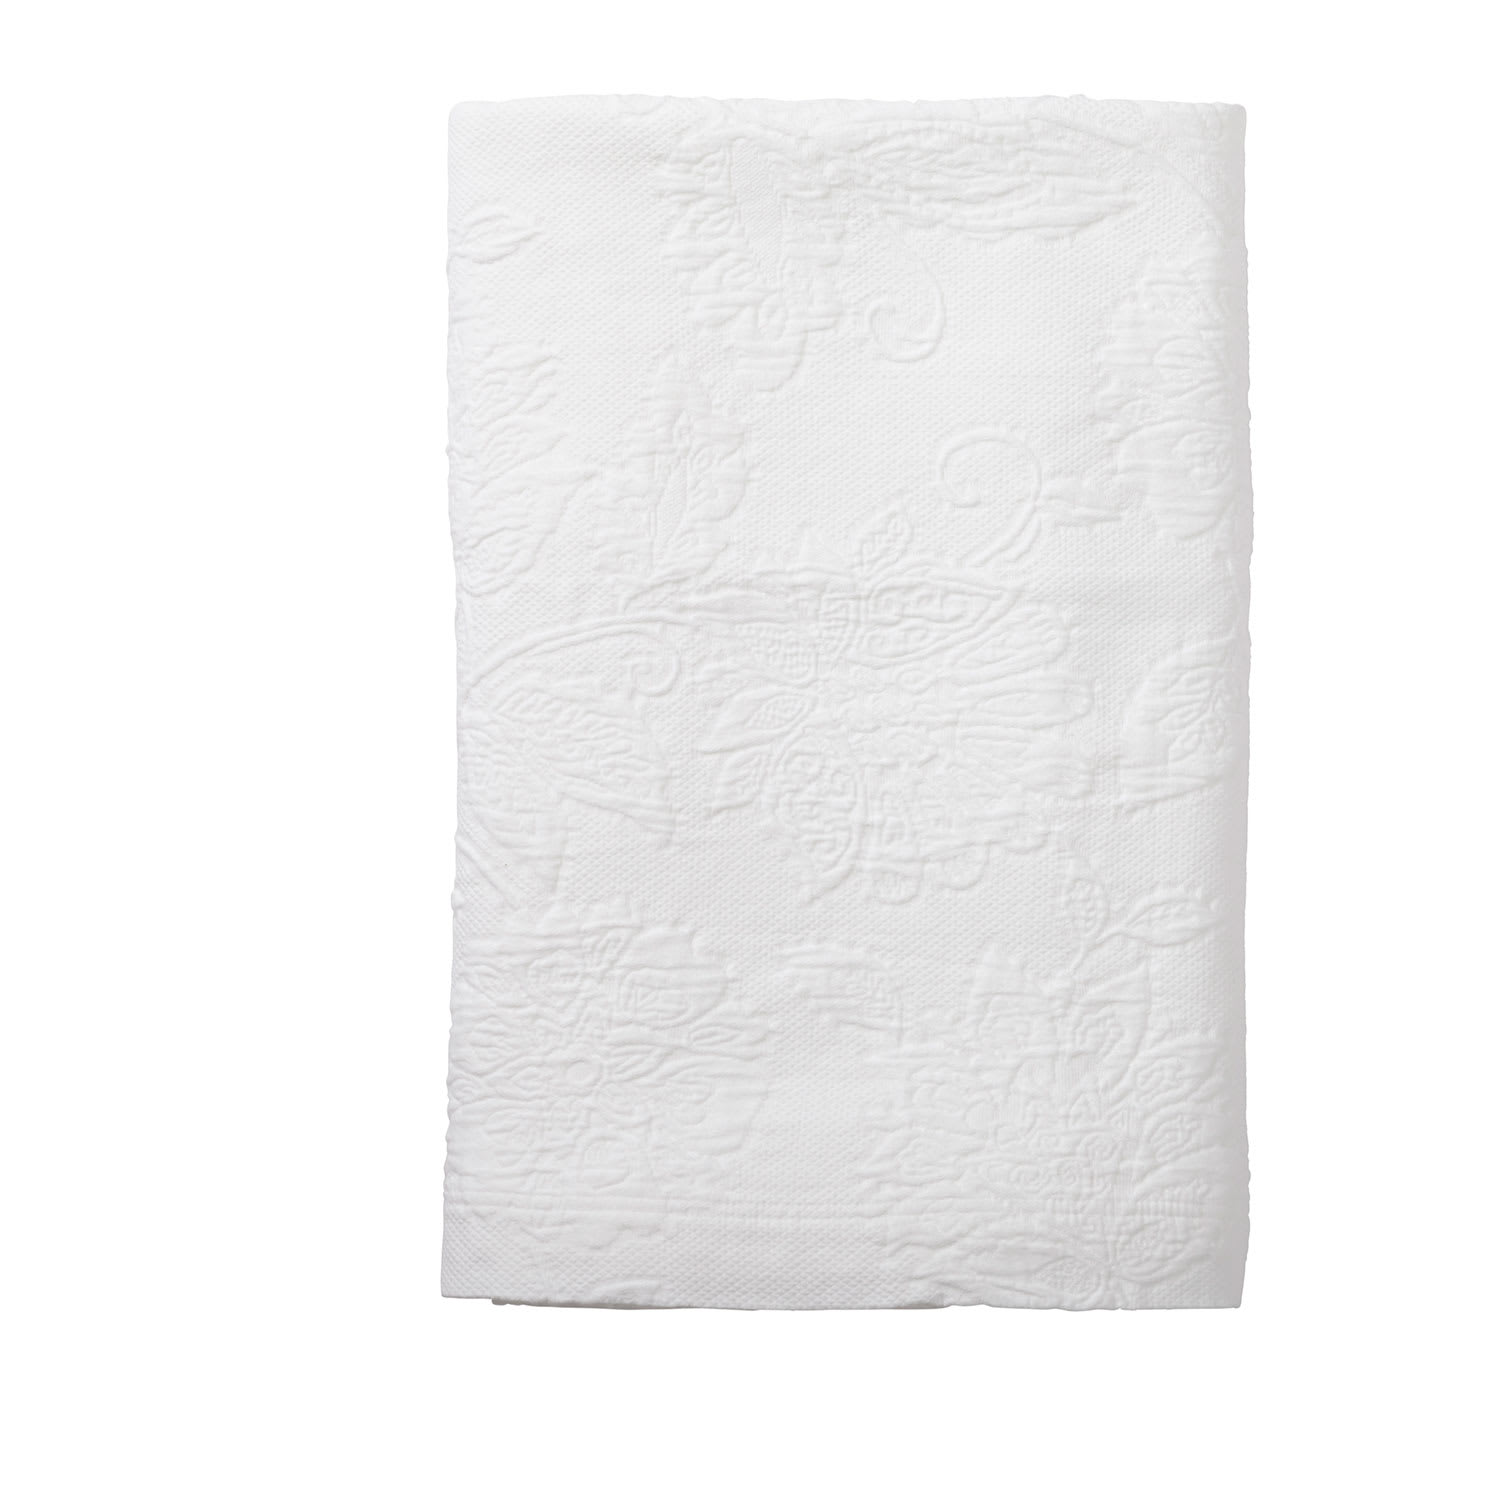 Putnam Cotton Matelassé Coverlet - White